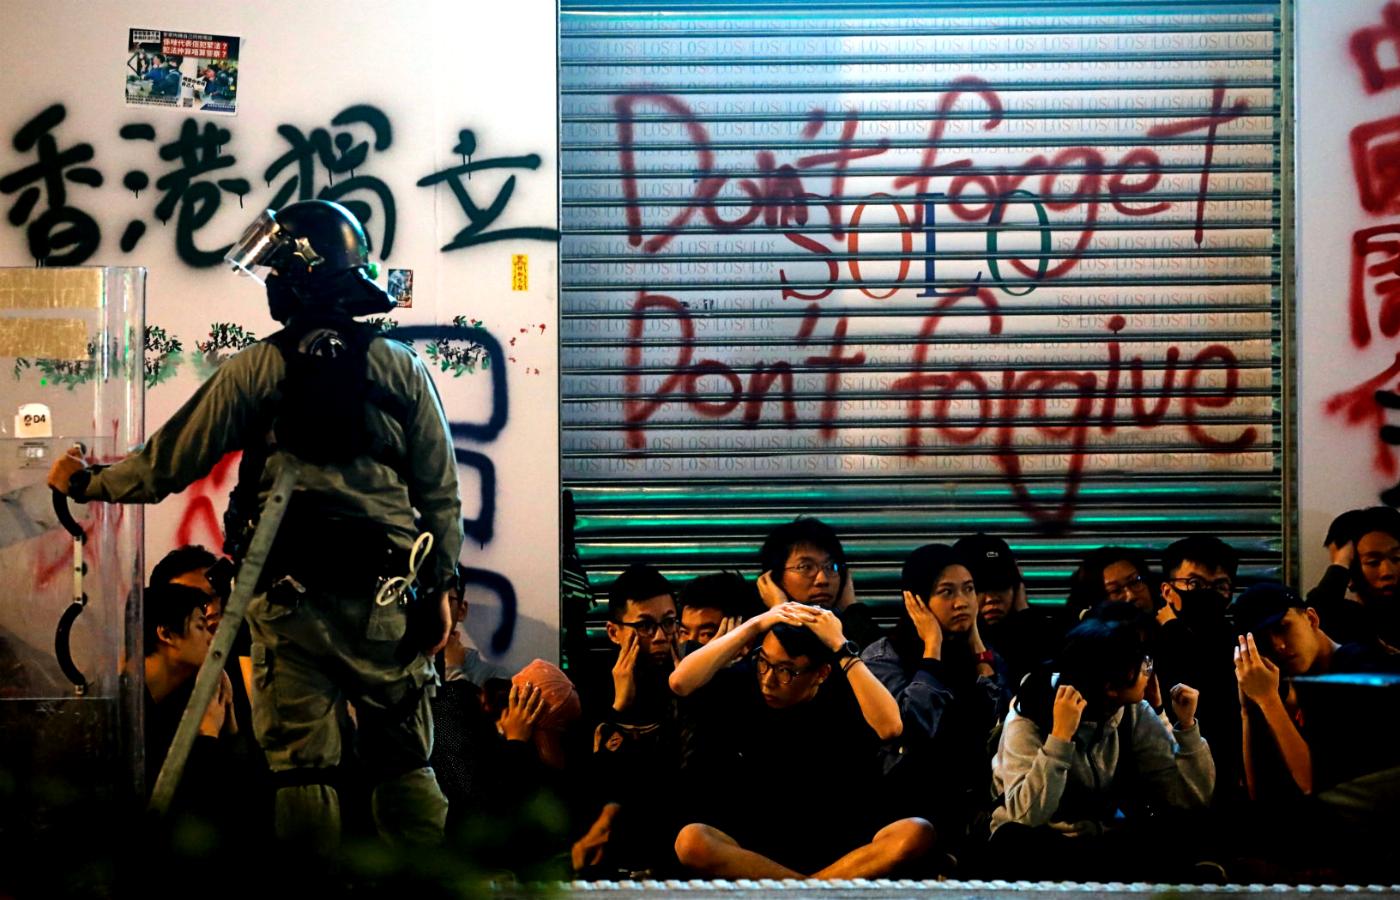 Co trzeci dorosły mieszkaniec Hongkongu przypłacił ostatnie protesty objawami zespołu stresu pourazowego (PTSD).